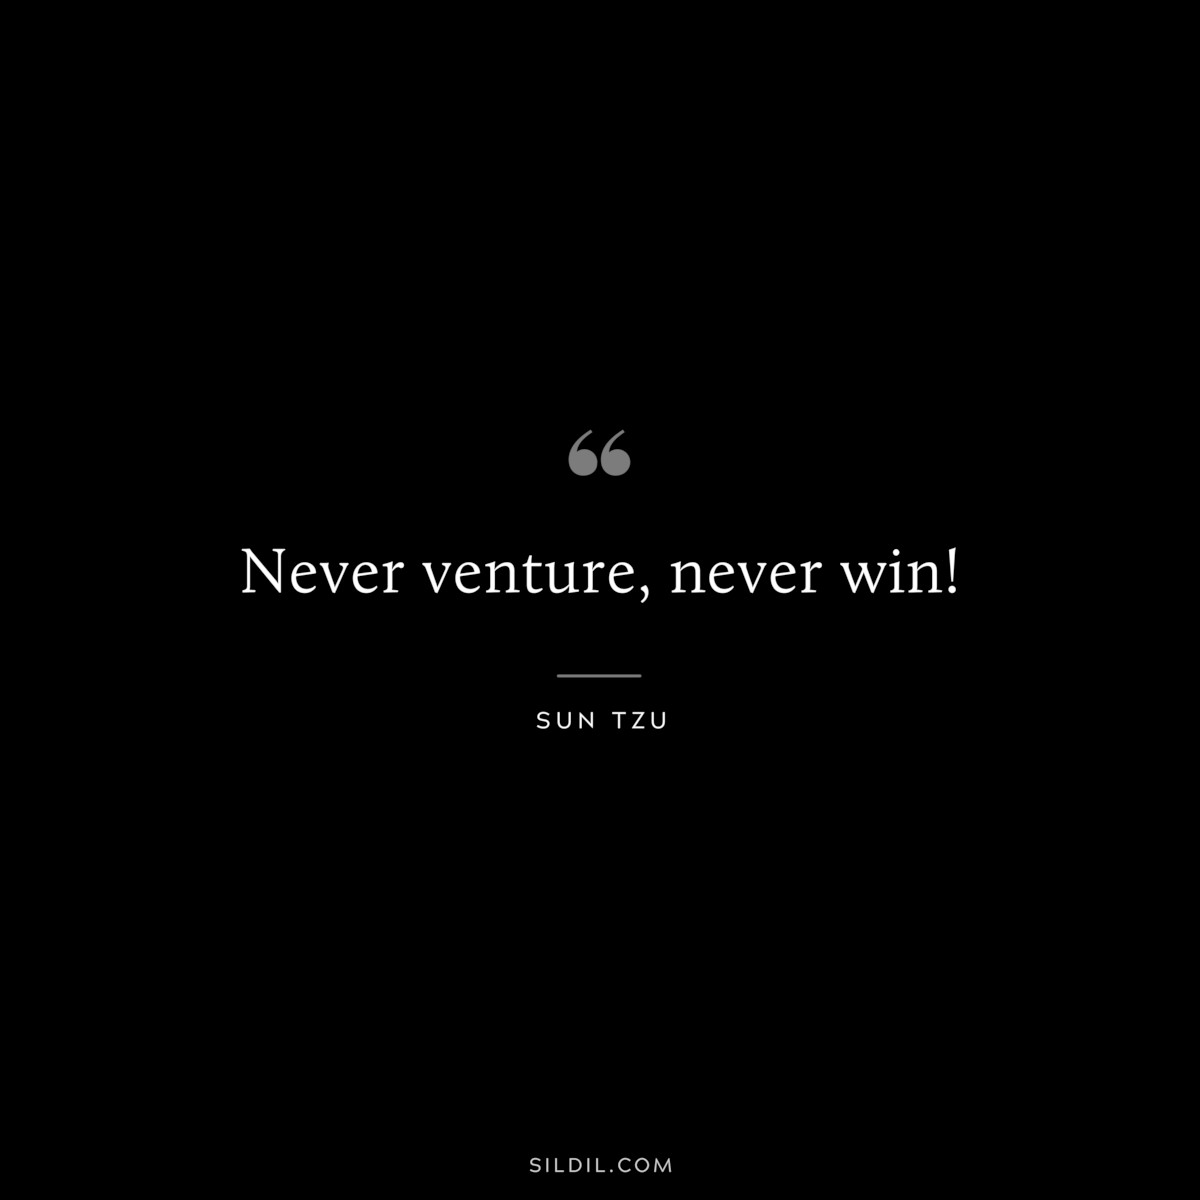 Never venture, never win!― Sun Tzu